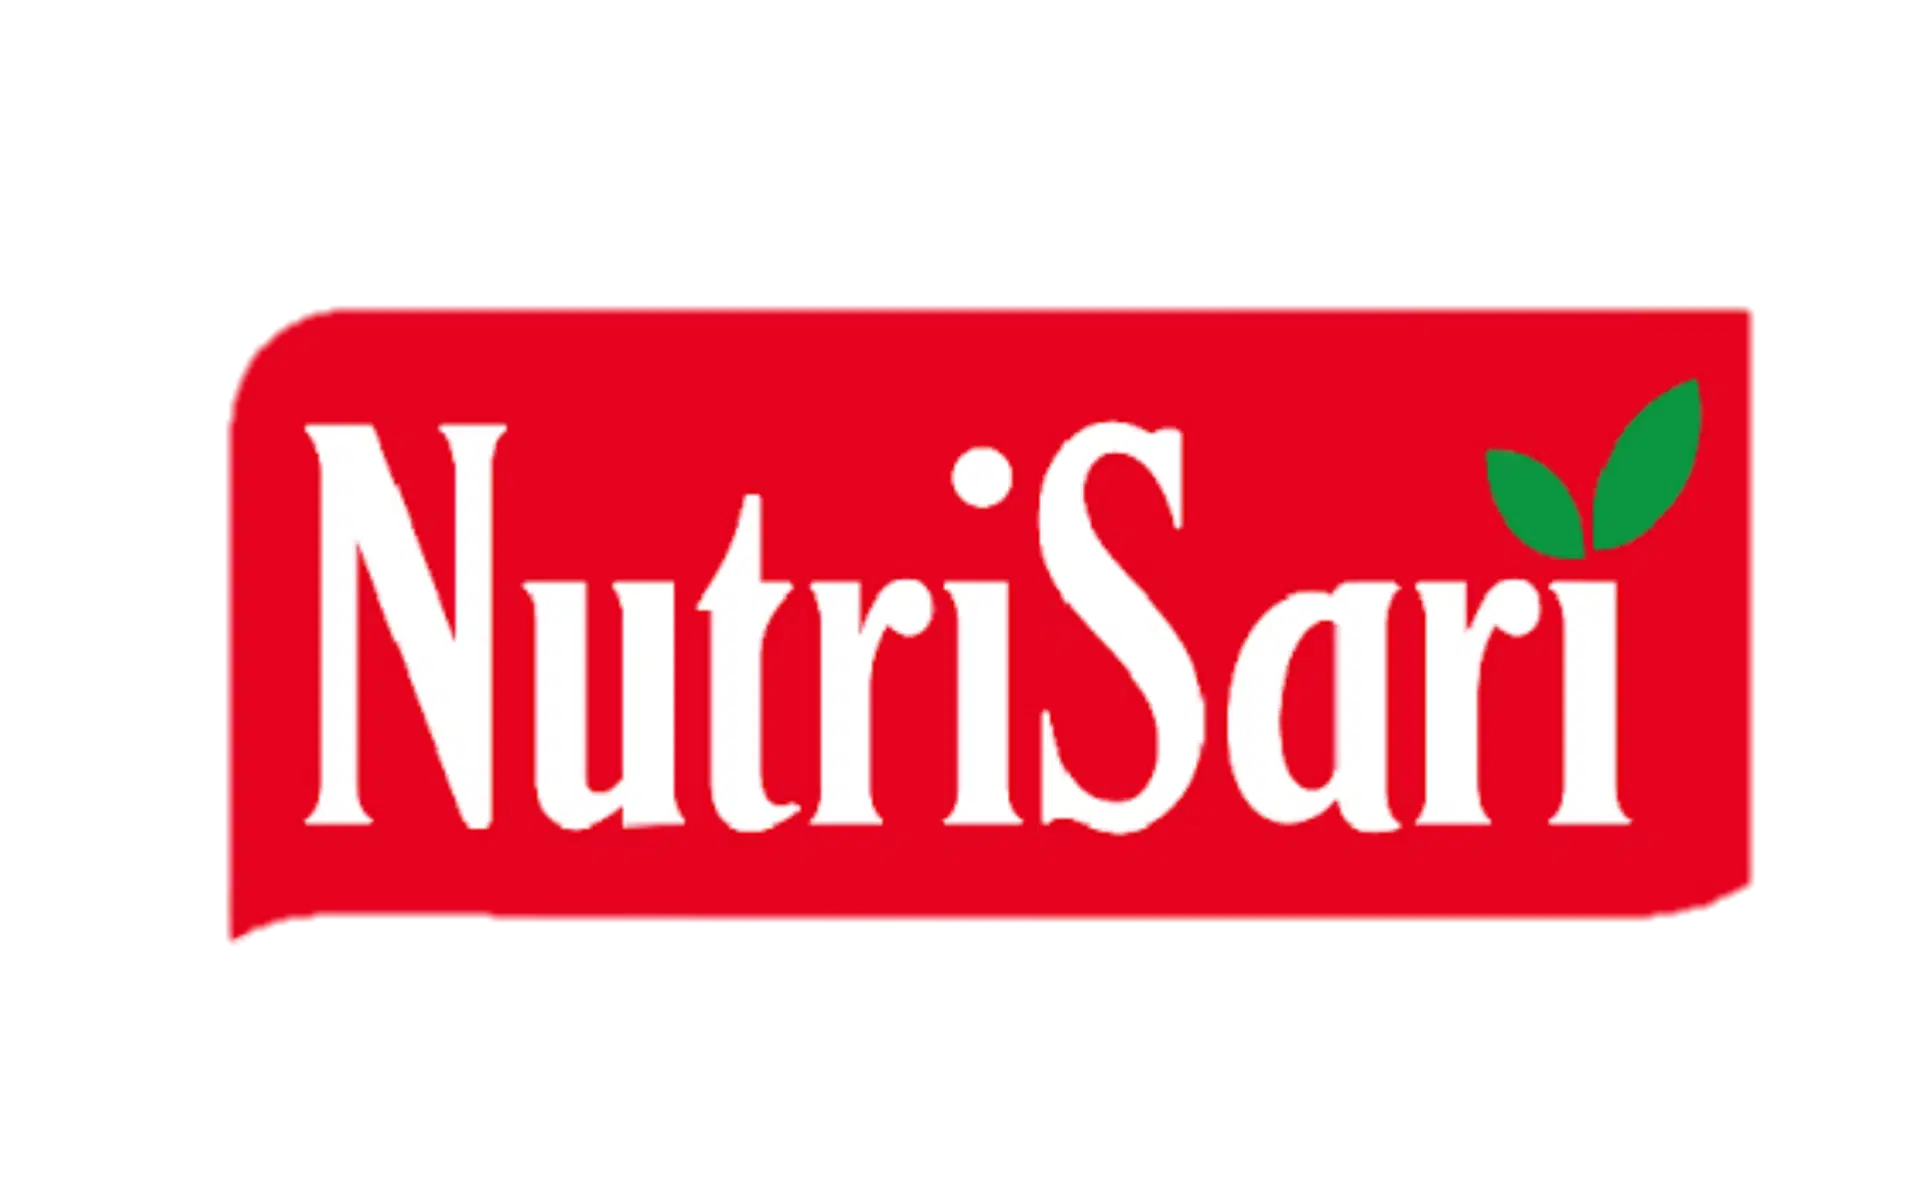 logo-nutrisari-png